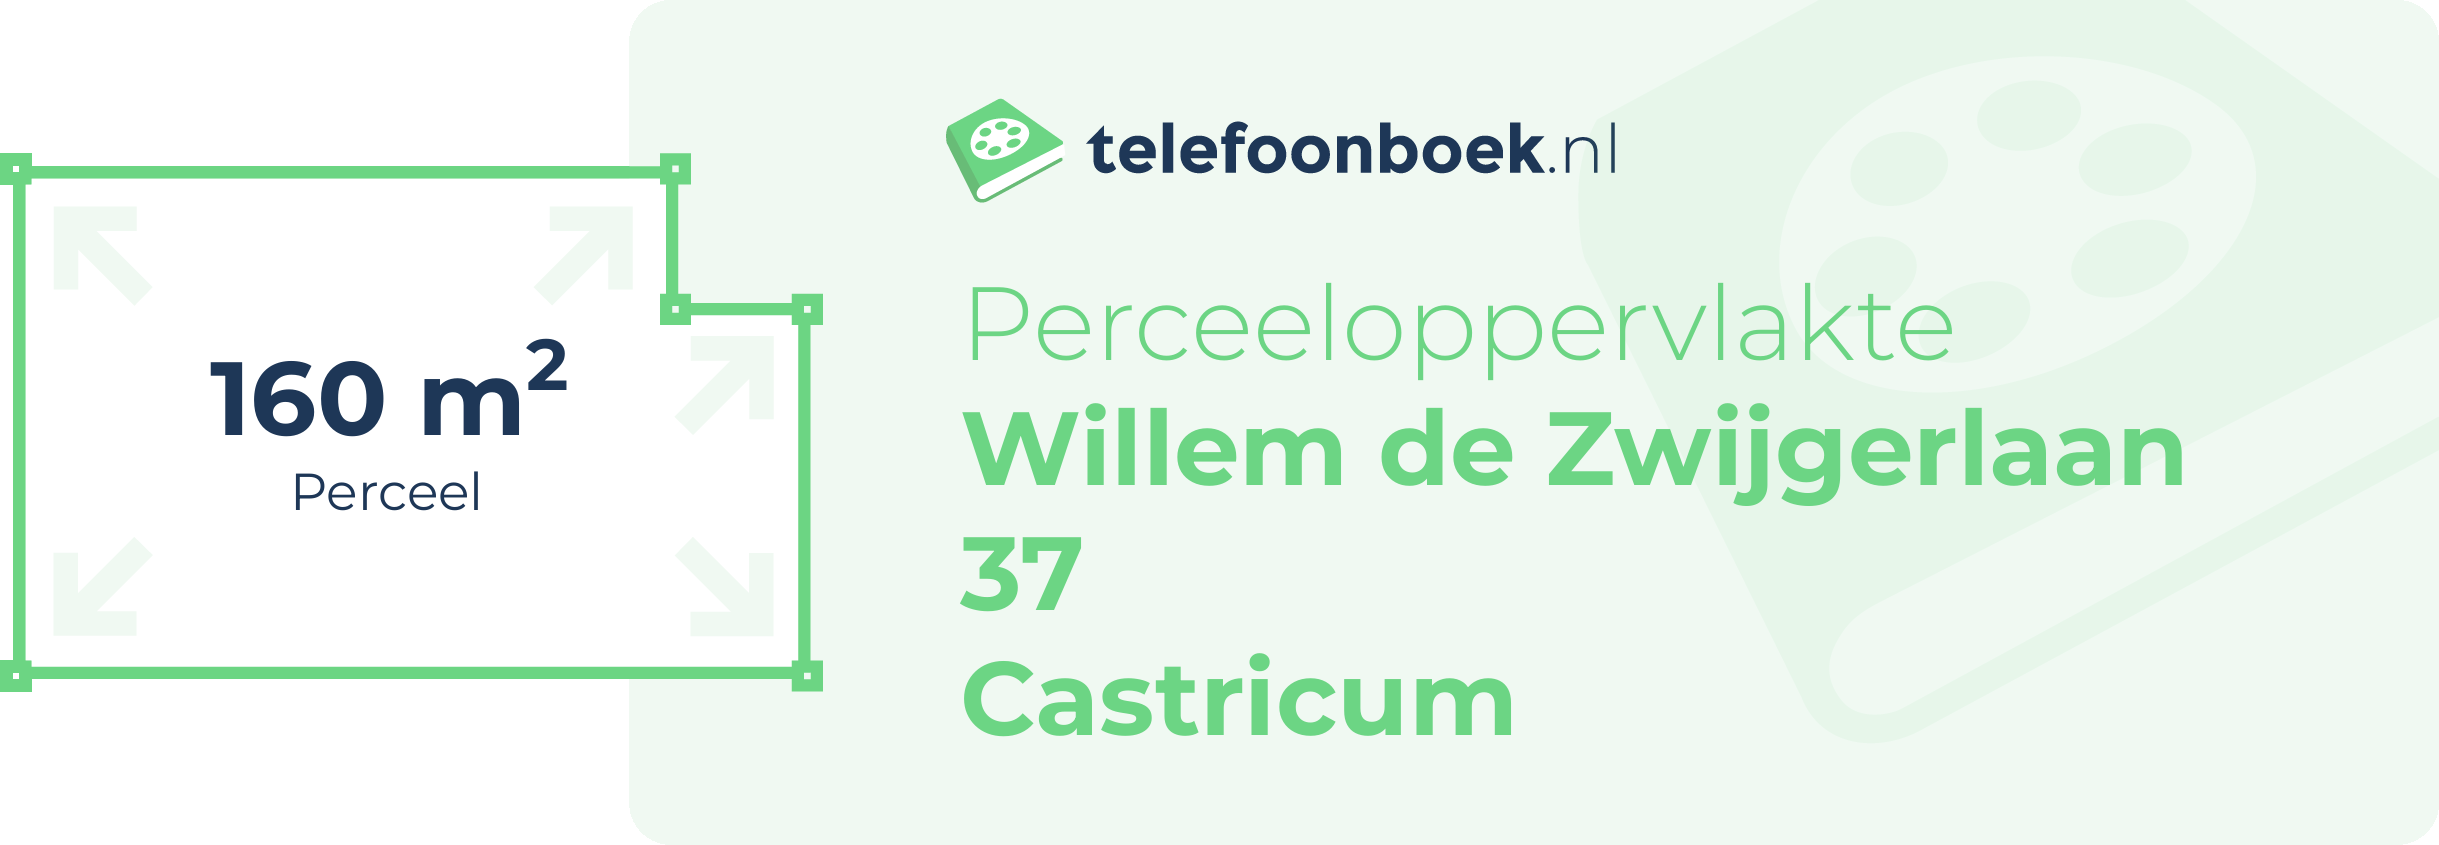 Perceeloppervlakte Willem De Zwijgerlaan 37 Castricum